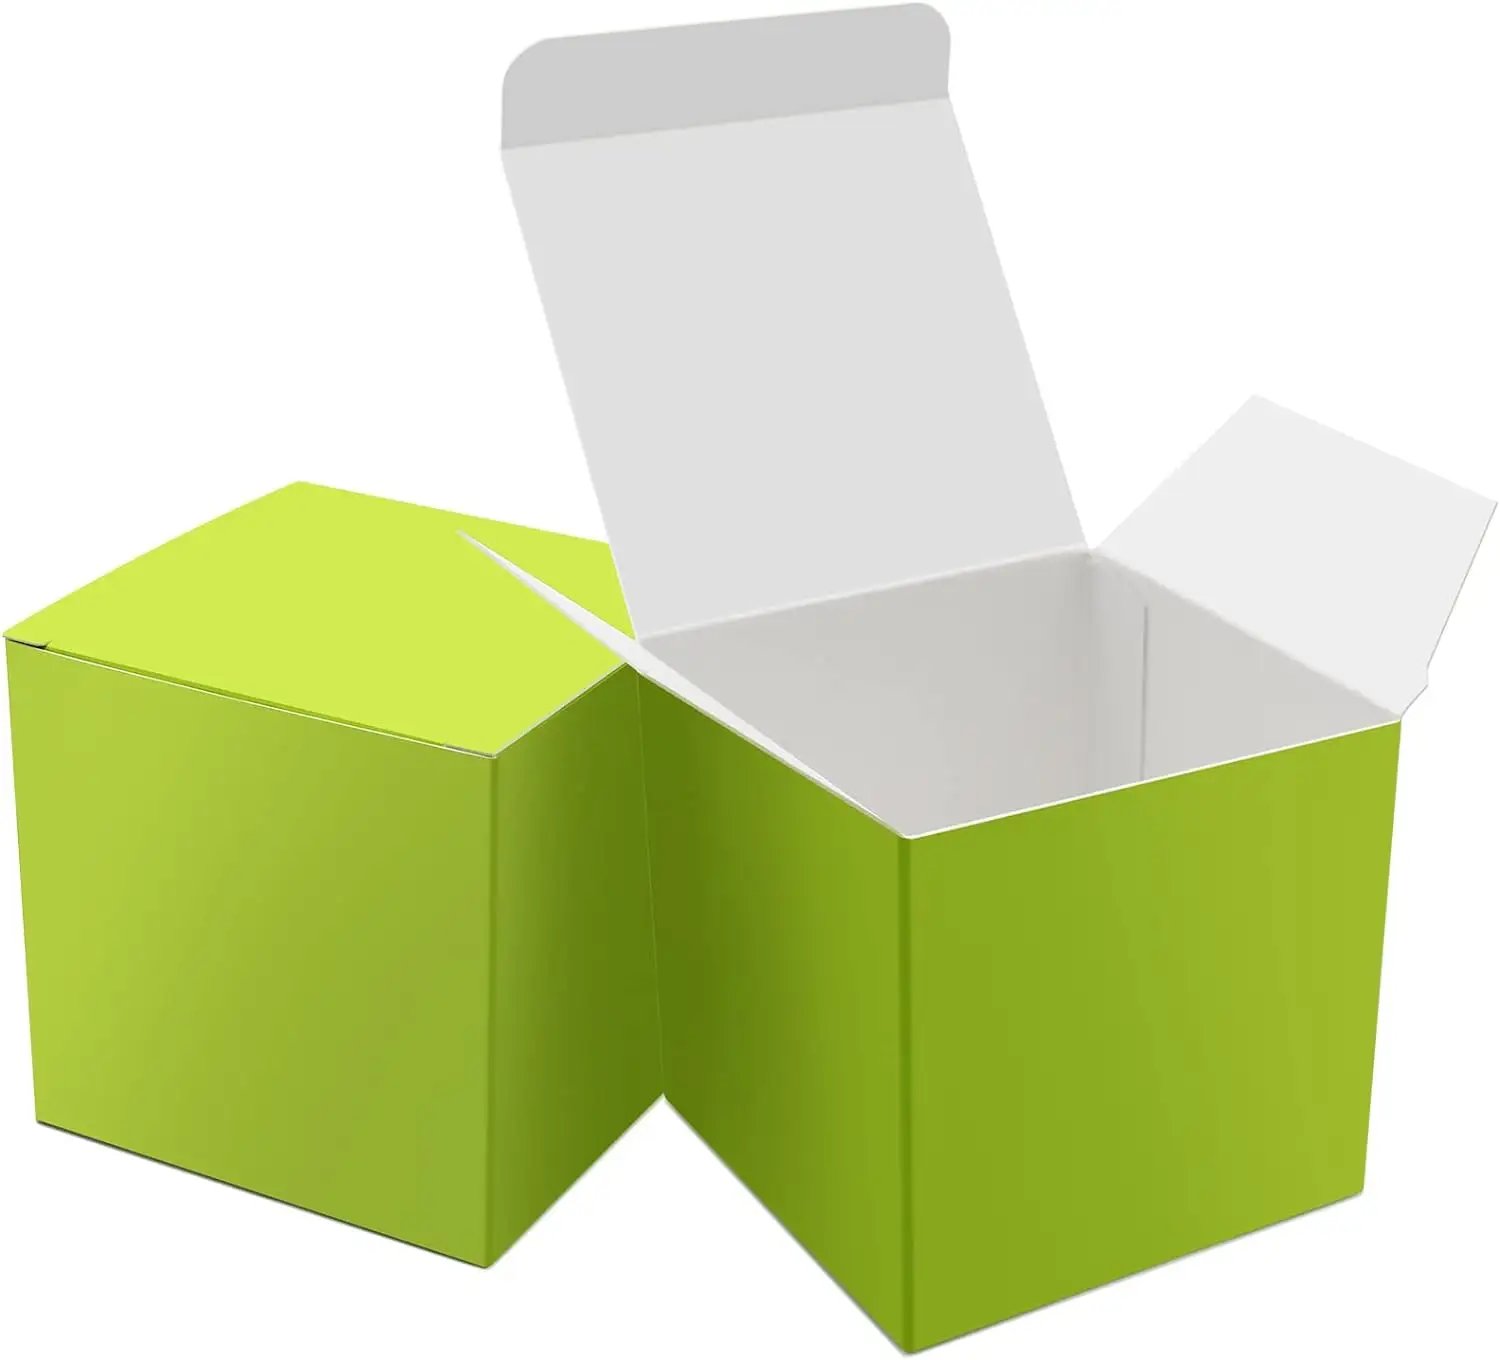 맞춤형 녹색 종이 선물 작은 사탕 상자 벌크 3x3x3 인치 선물 상자 뚜껑 좋은 치료 상자